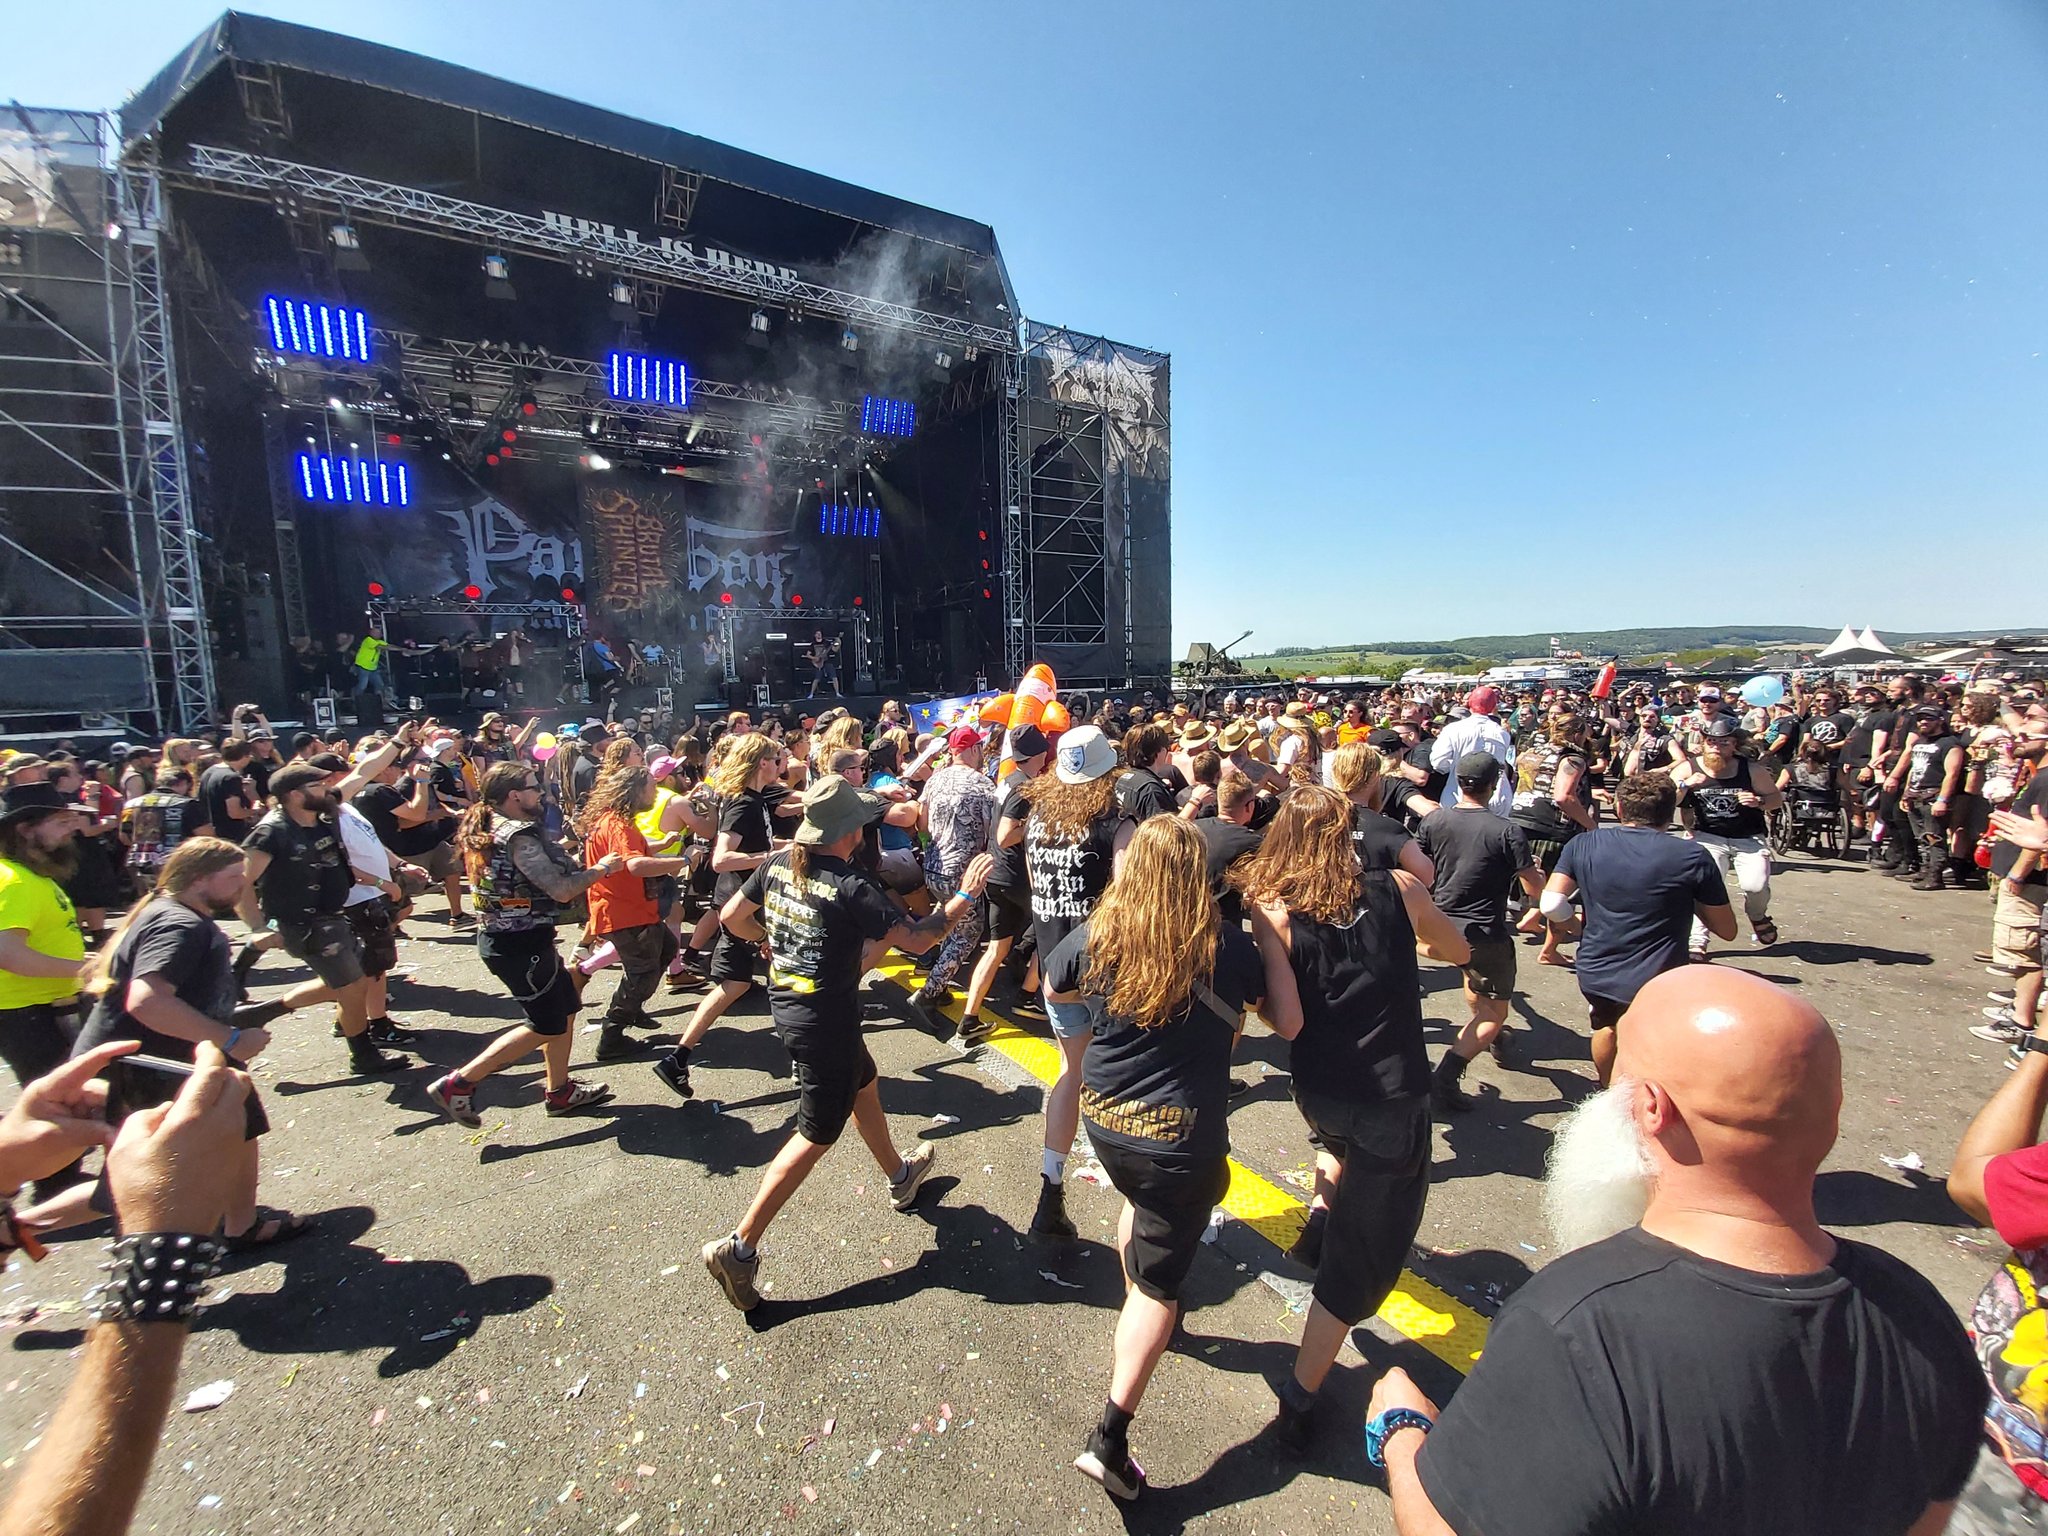   Geselligkeit bei Gitarrenmusik | Partysan: Das Extrem-Metal-Fest tobte im Gegensatz zum Wacken-Open-Air bei bestem Wetter  